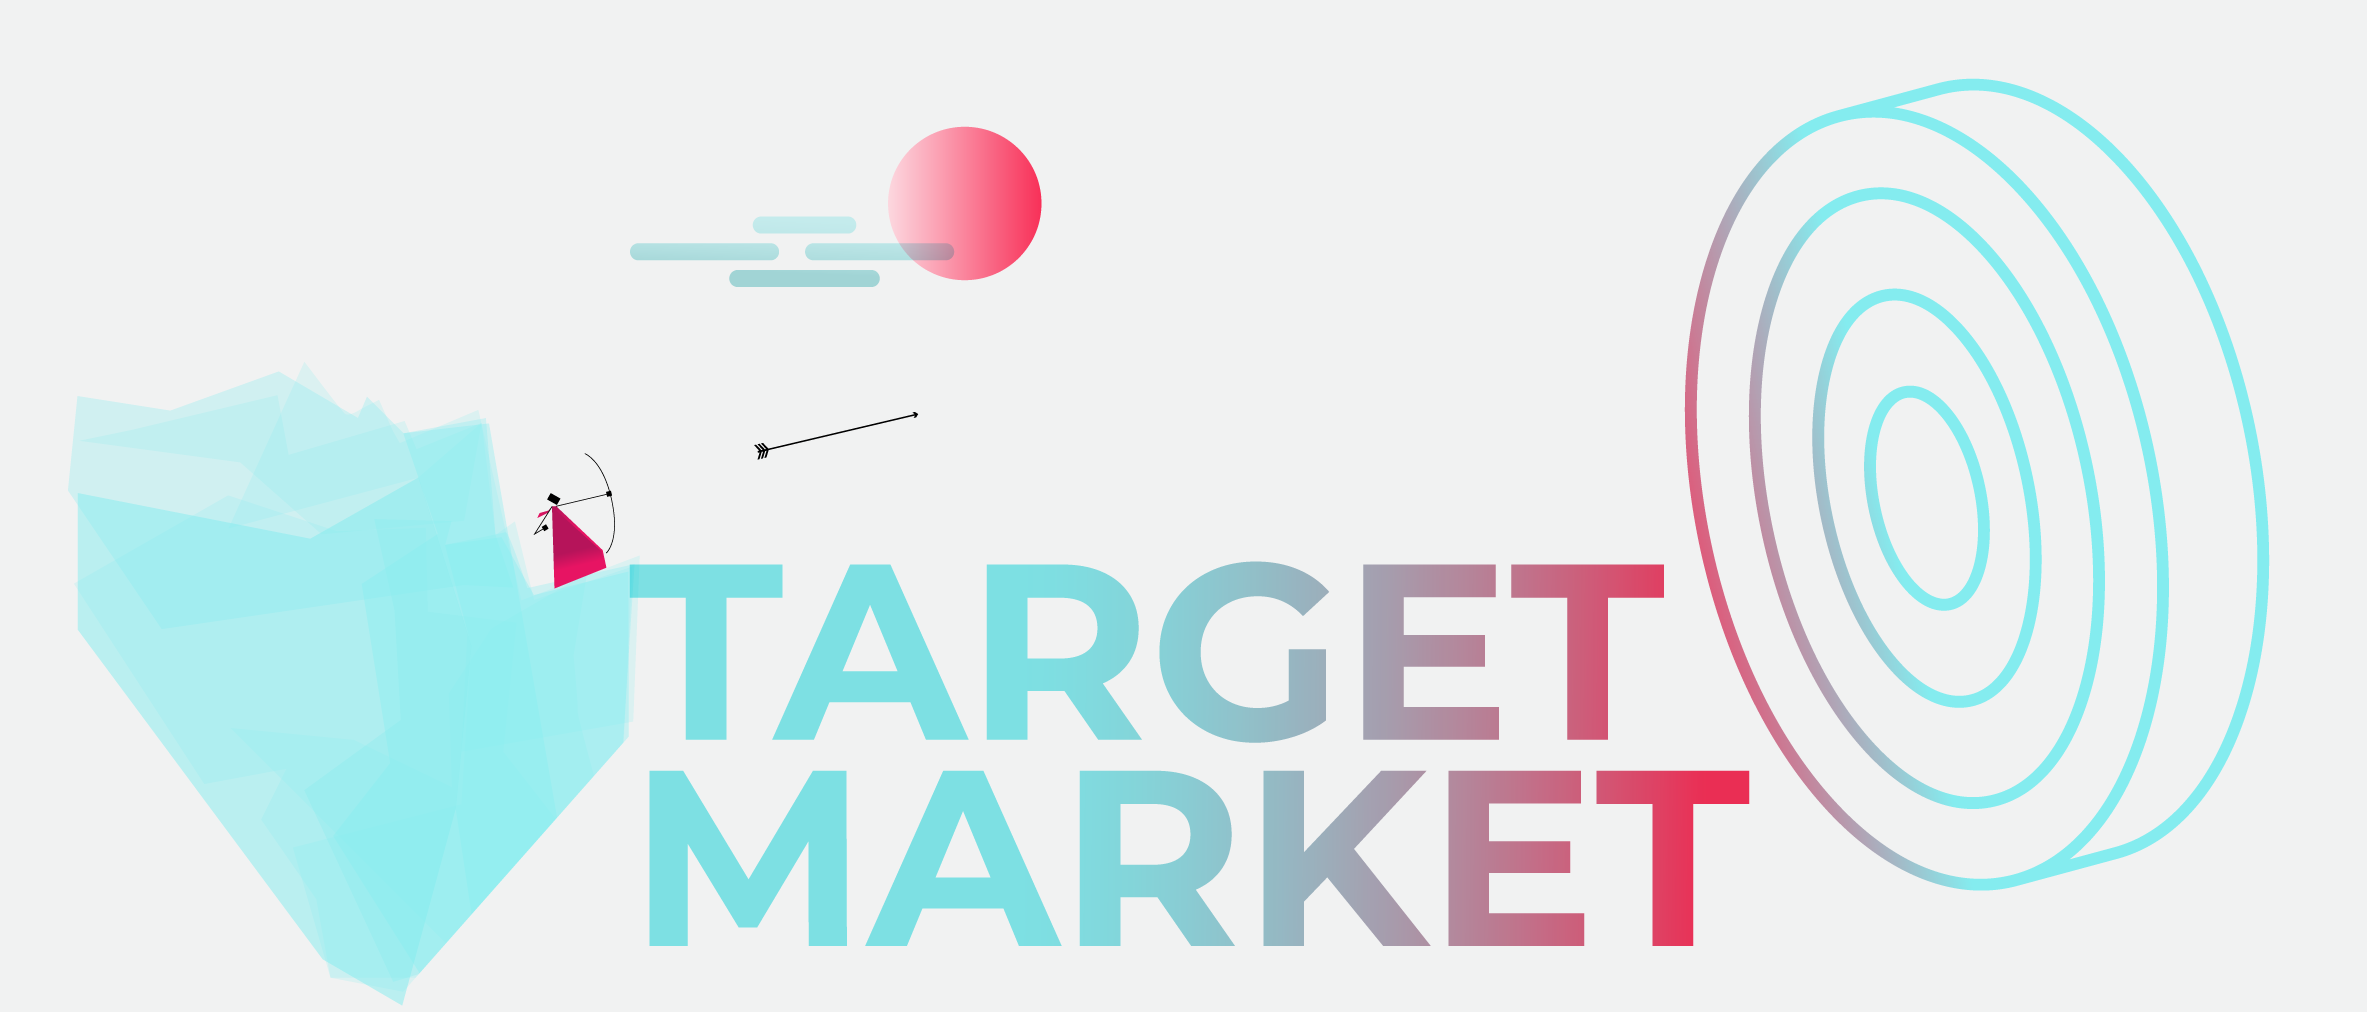 3air - Target markets